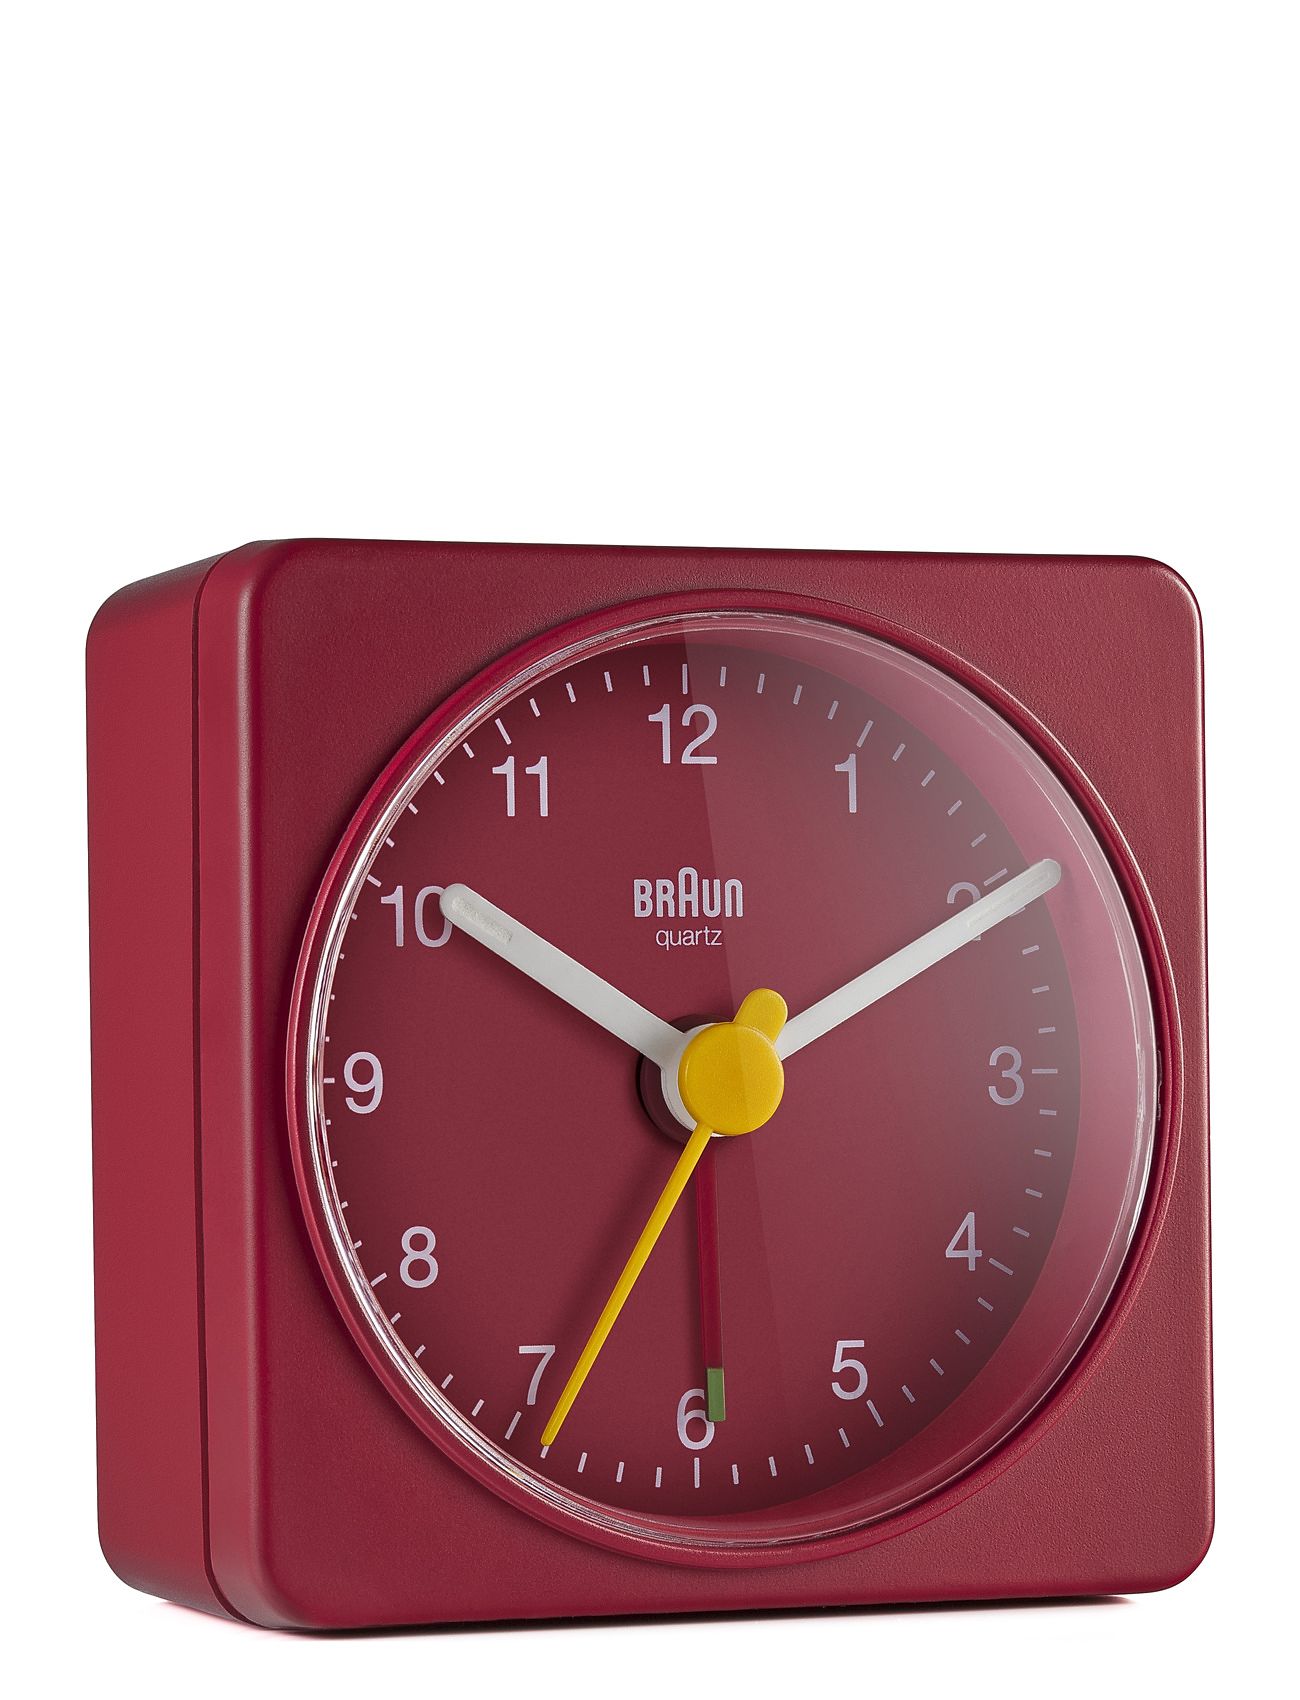 Braun "Braun Vækkeur Home Decoration Watches Alarm Clocks Red Braun"